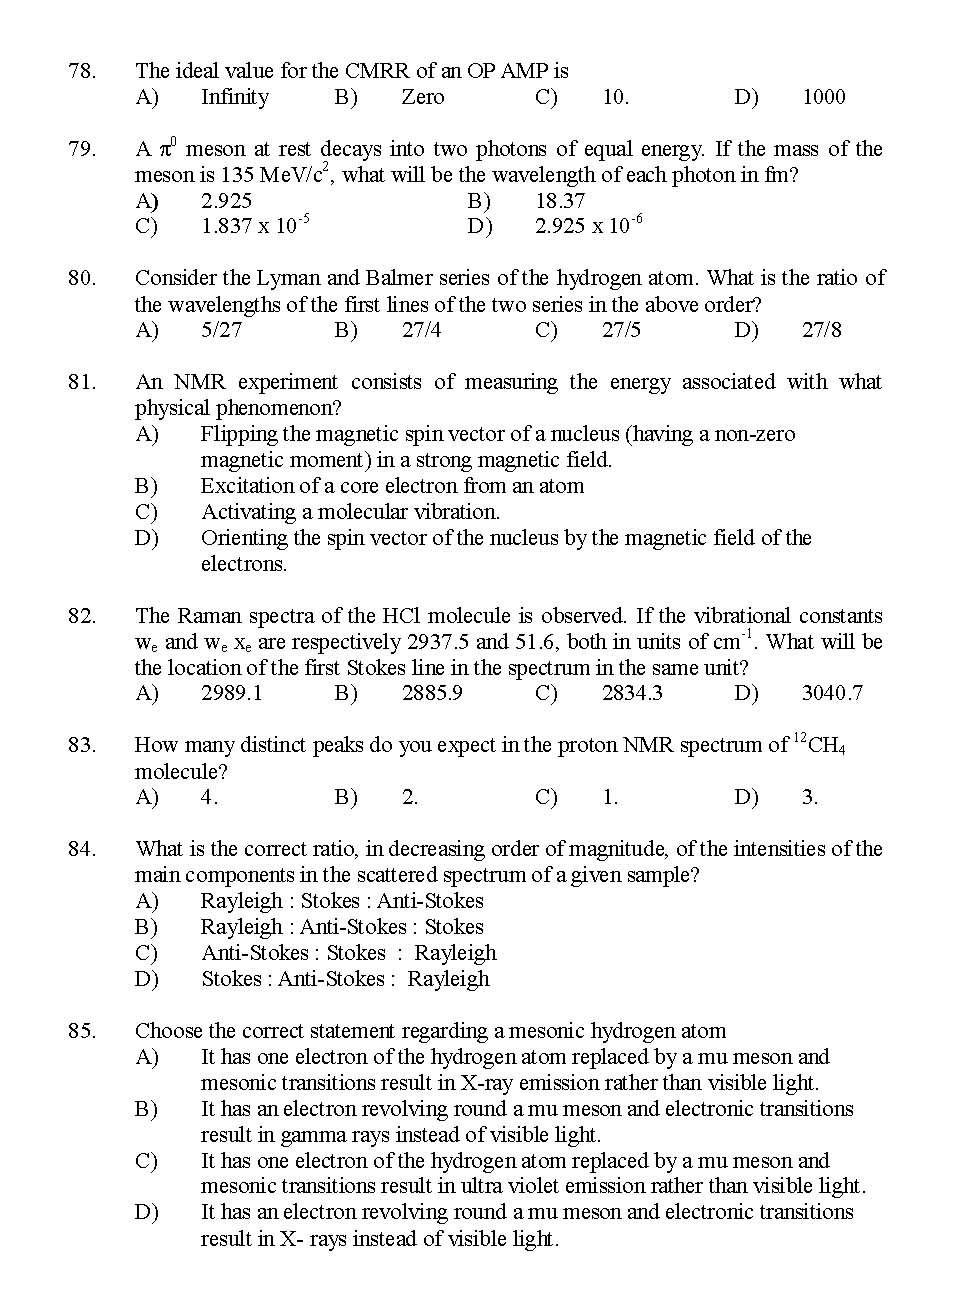 Kerala SET Physics Exam 2016 Question Code 16124 A 12